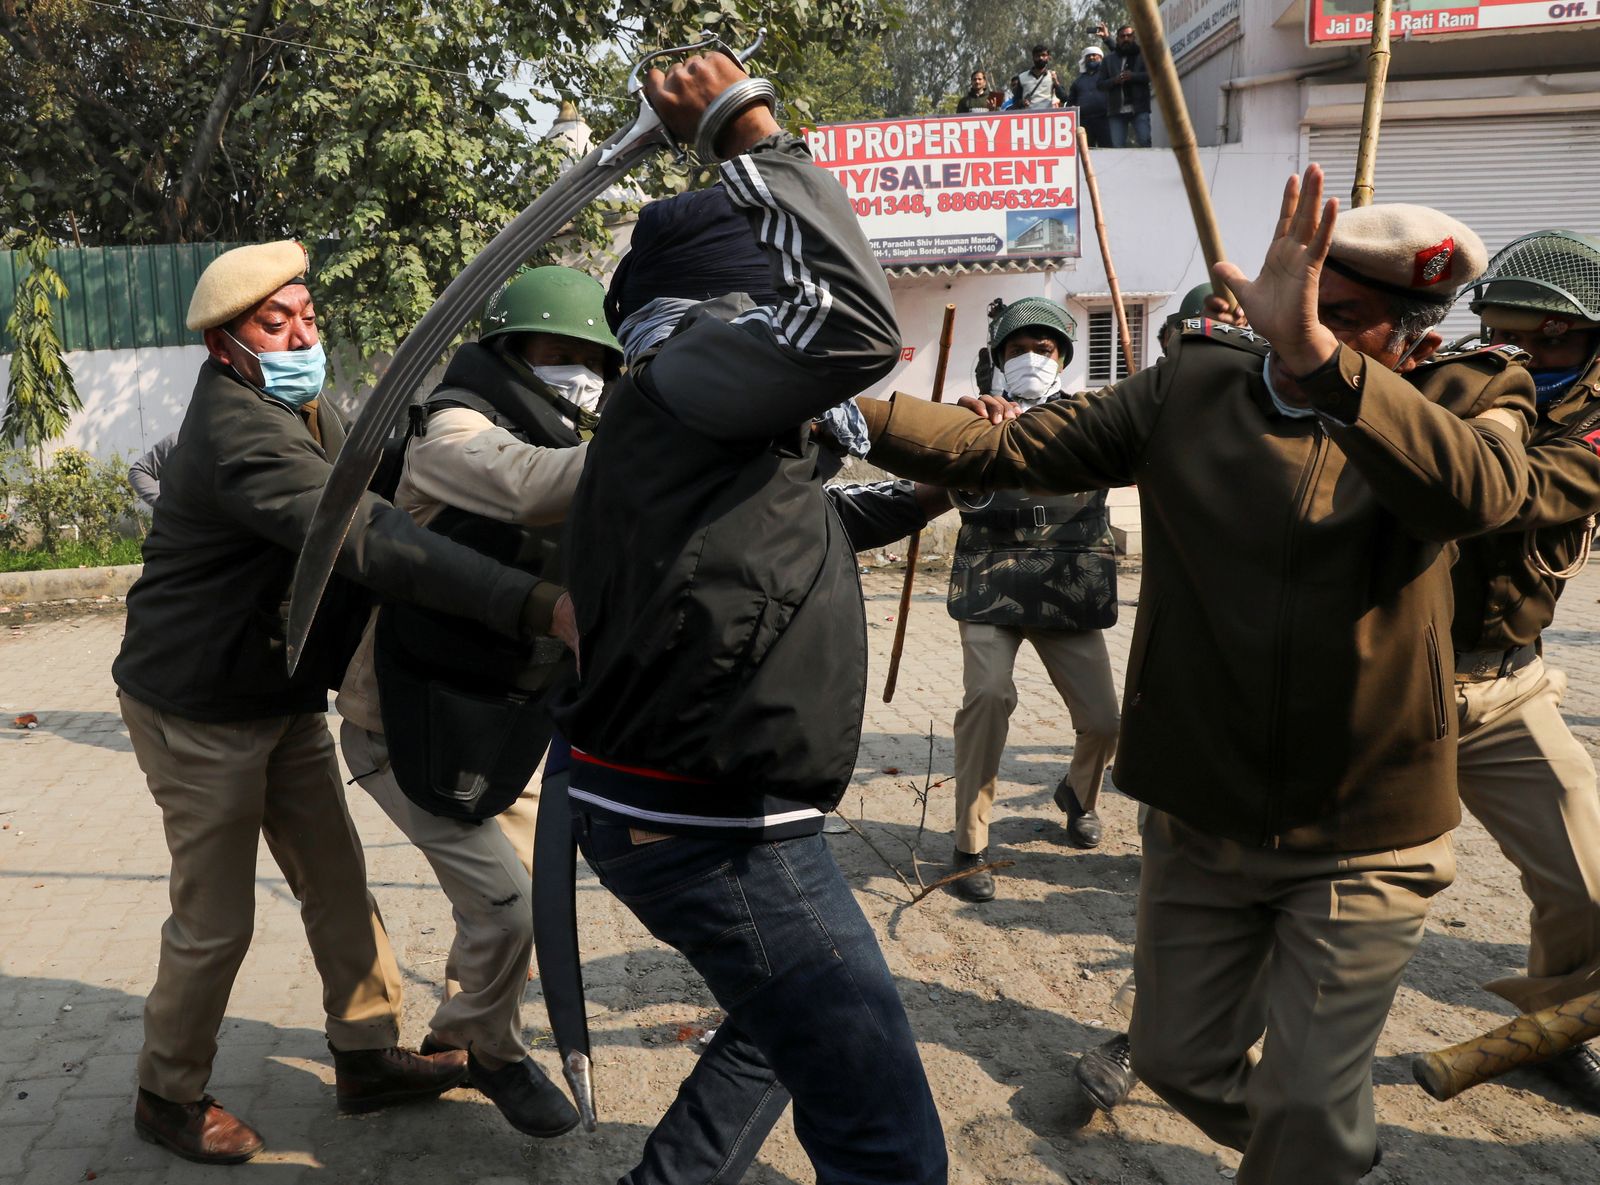 مواجهات بين قوات الشرطة و عدد من المتظاهرين المحتجين على تطبيق قوانين زراعية جديدة بالقرب من العاصمة الهندية نيودلهي - REUTERS